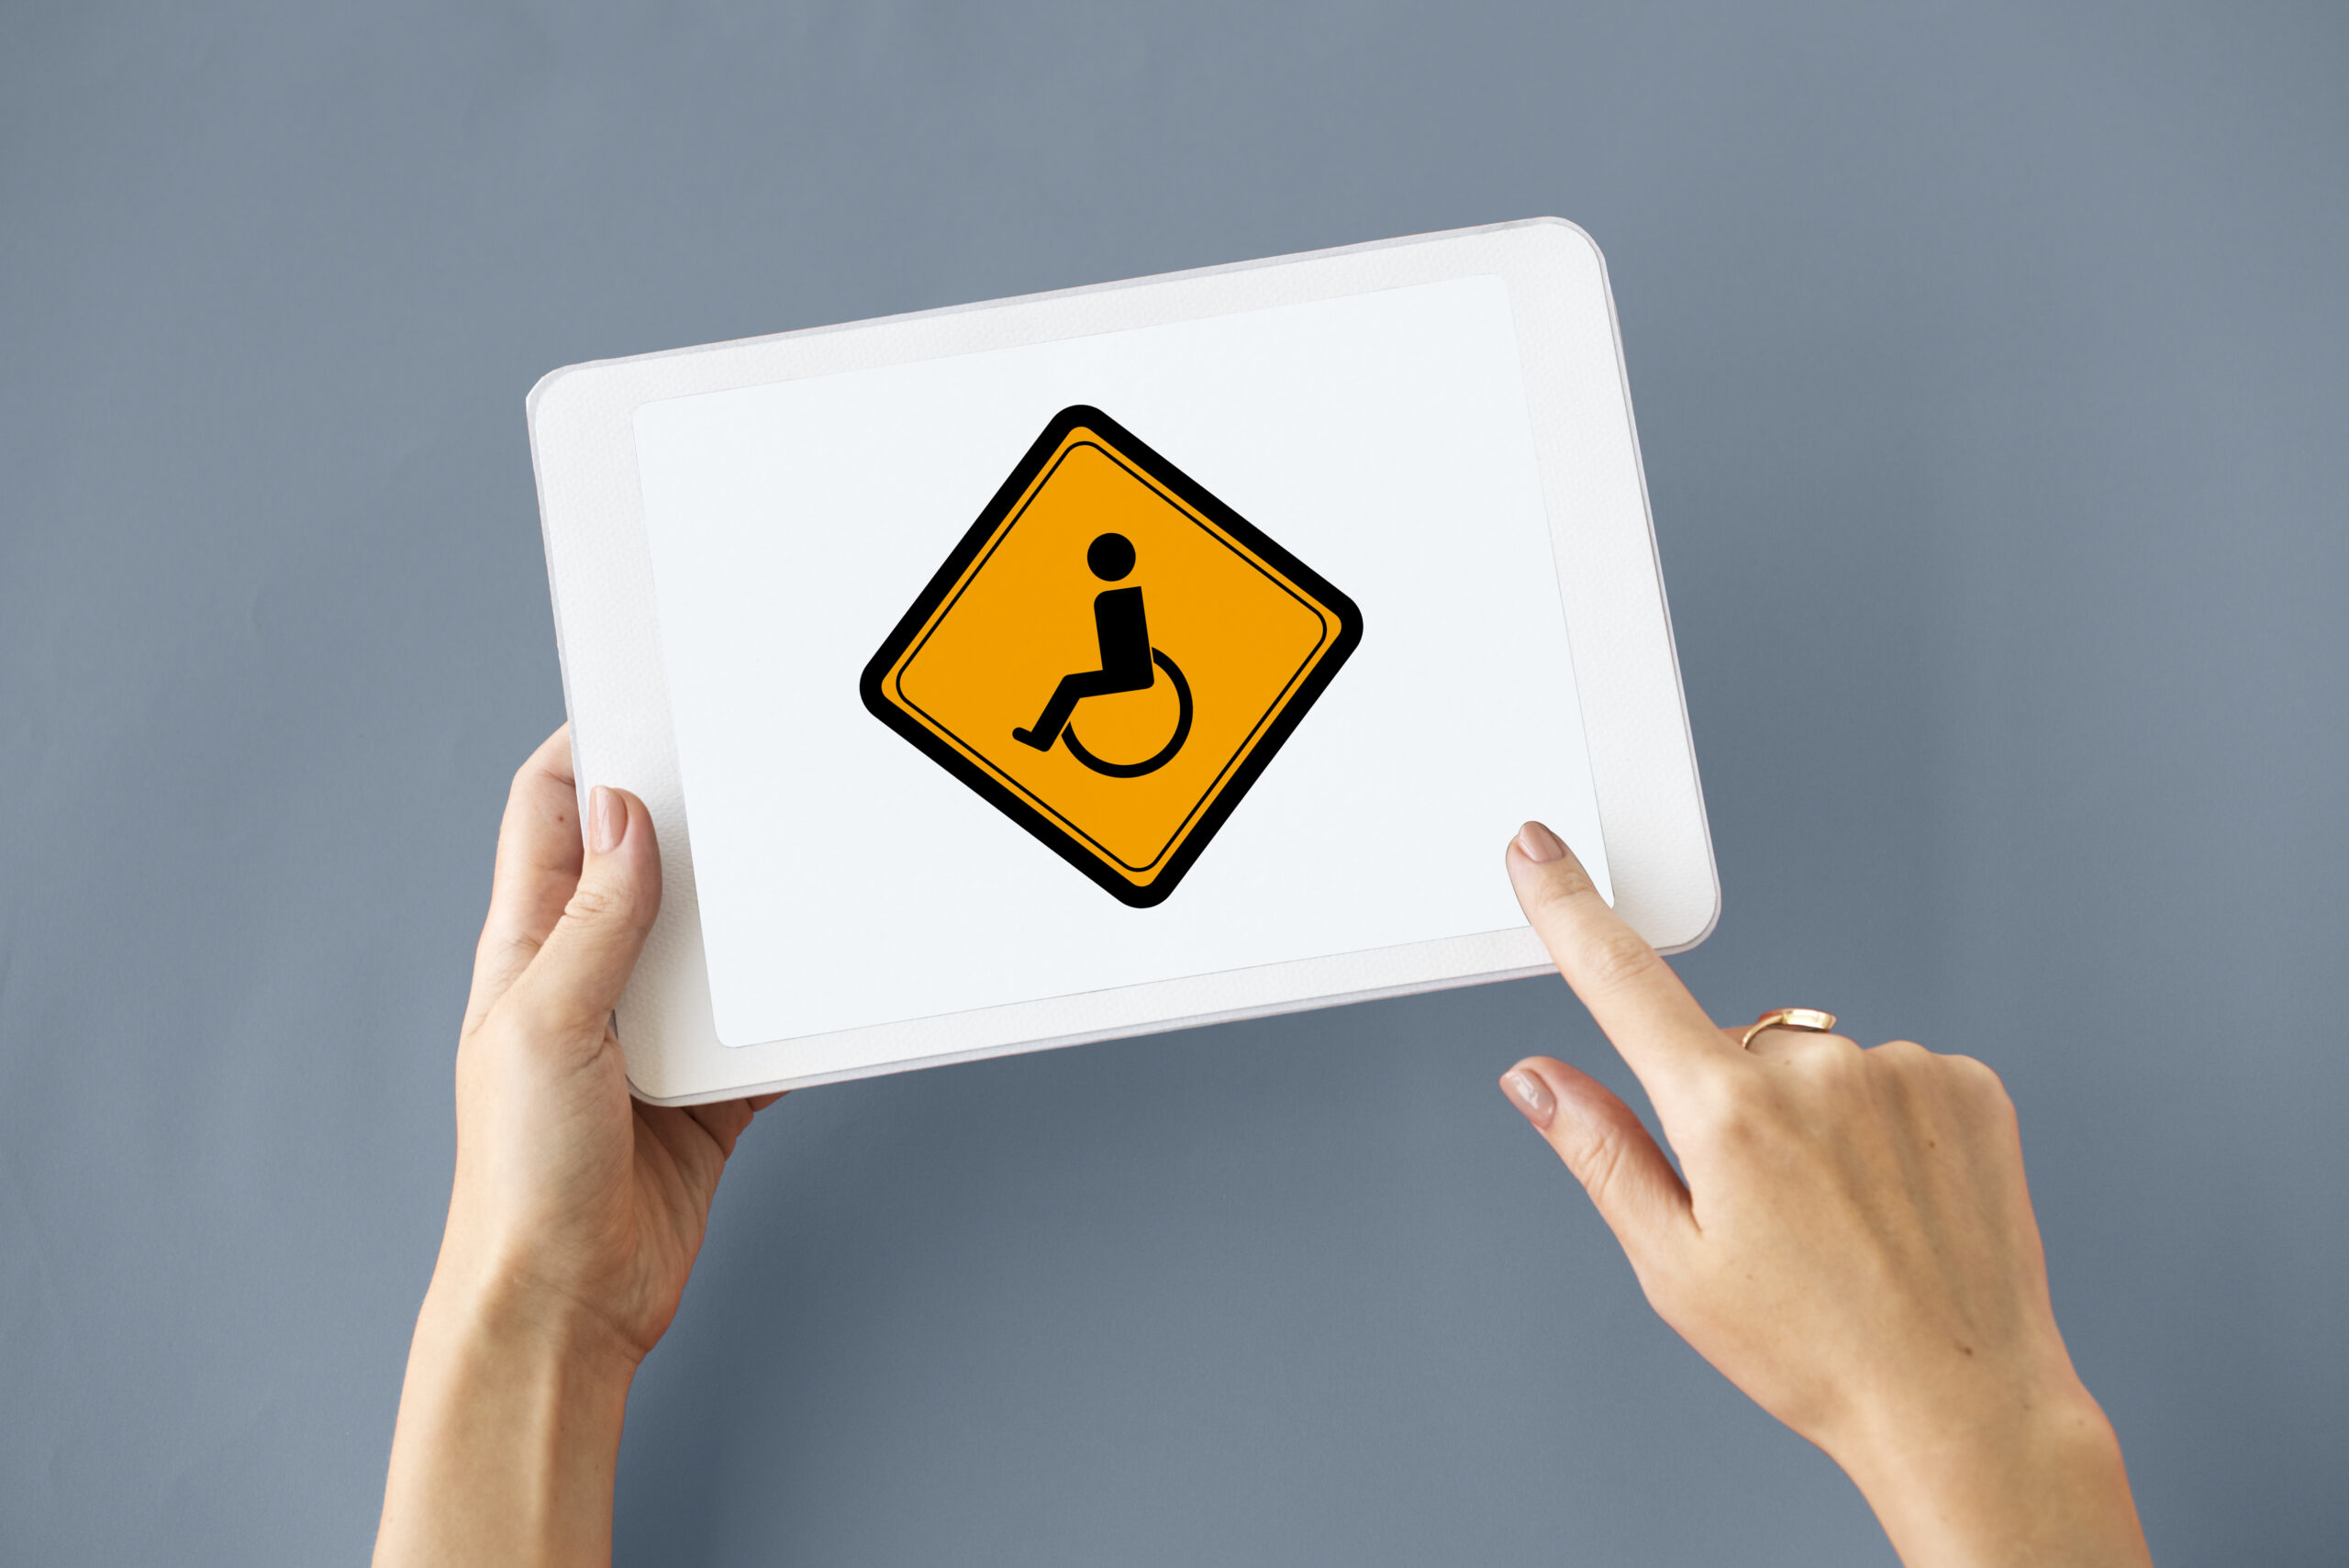 tablet z ikoną osoby niepełnosprawnej, obok ręka, która go trzyma a druga wskazuje na niego